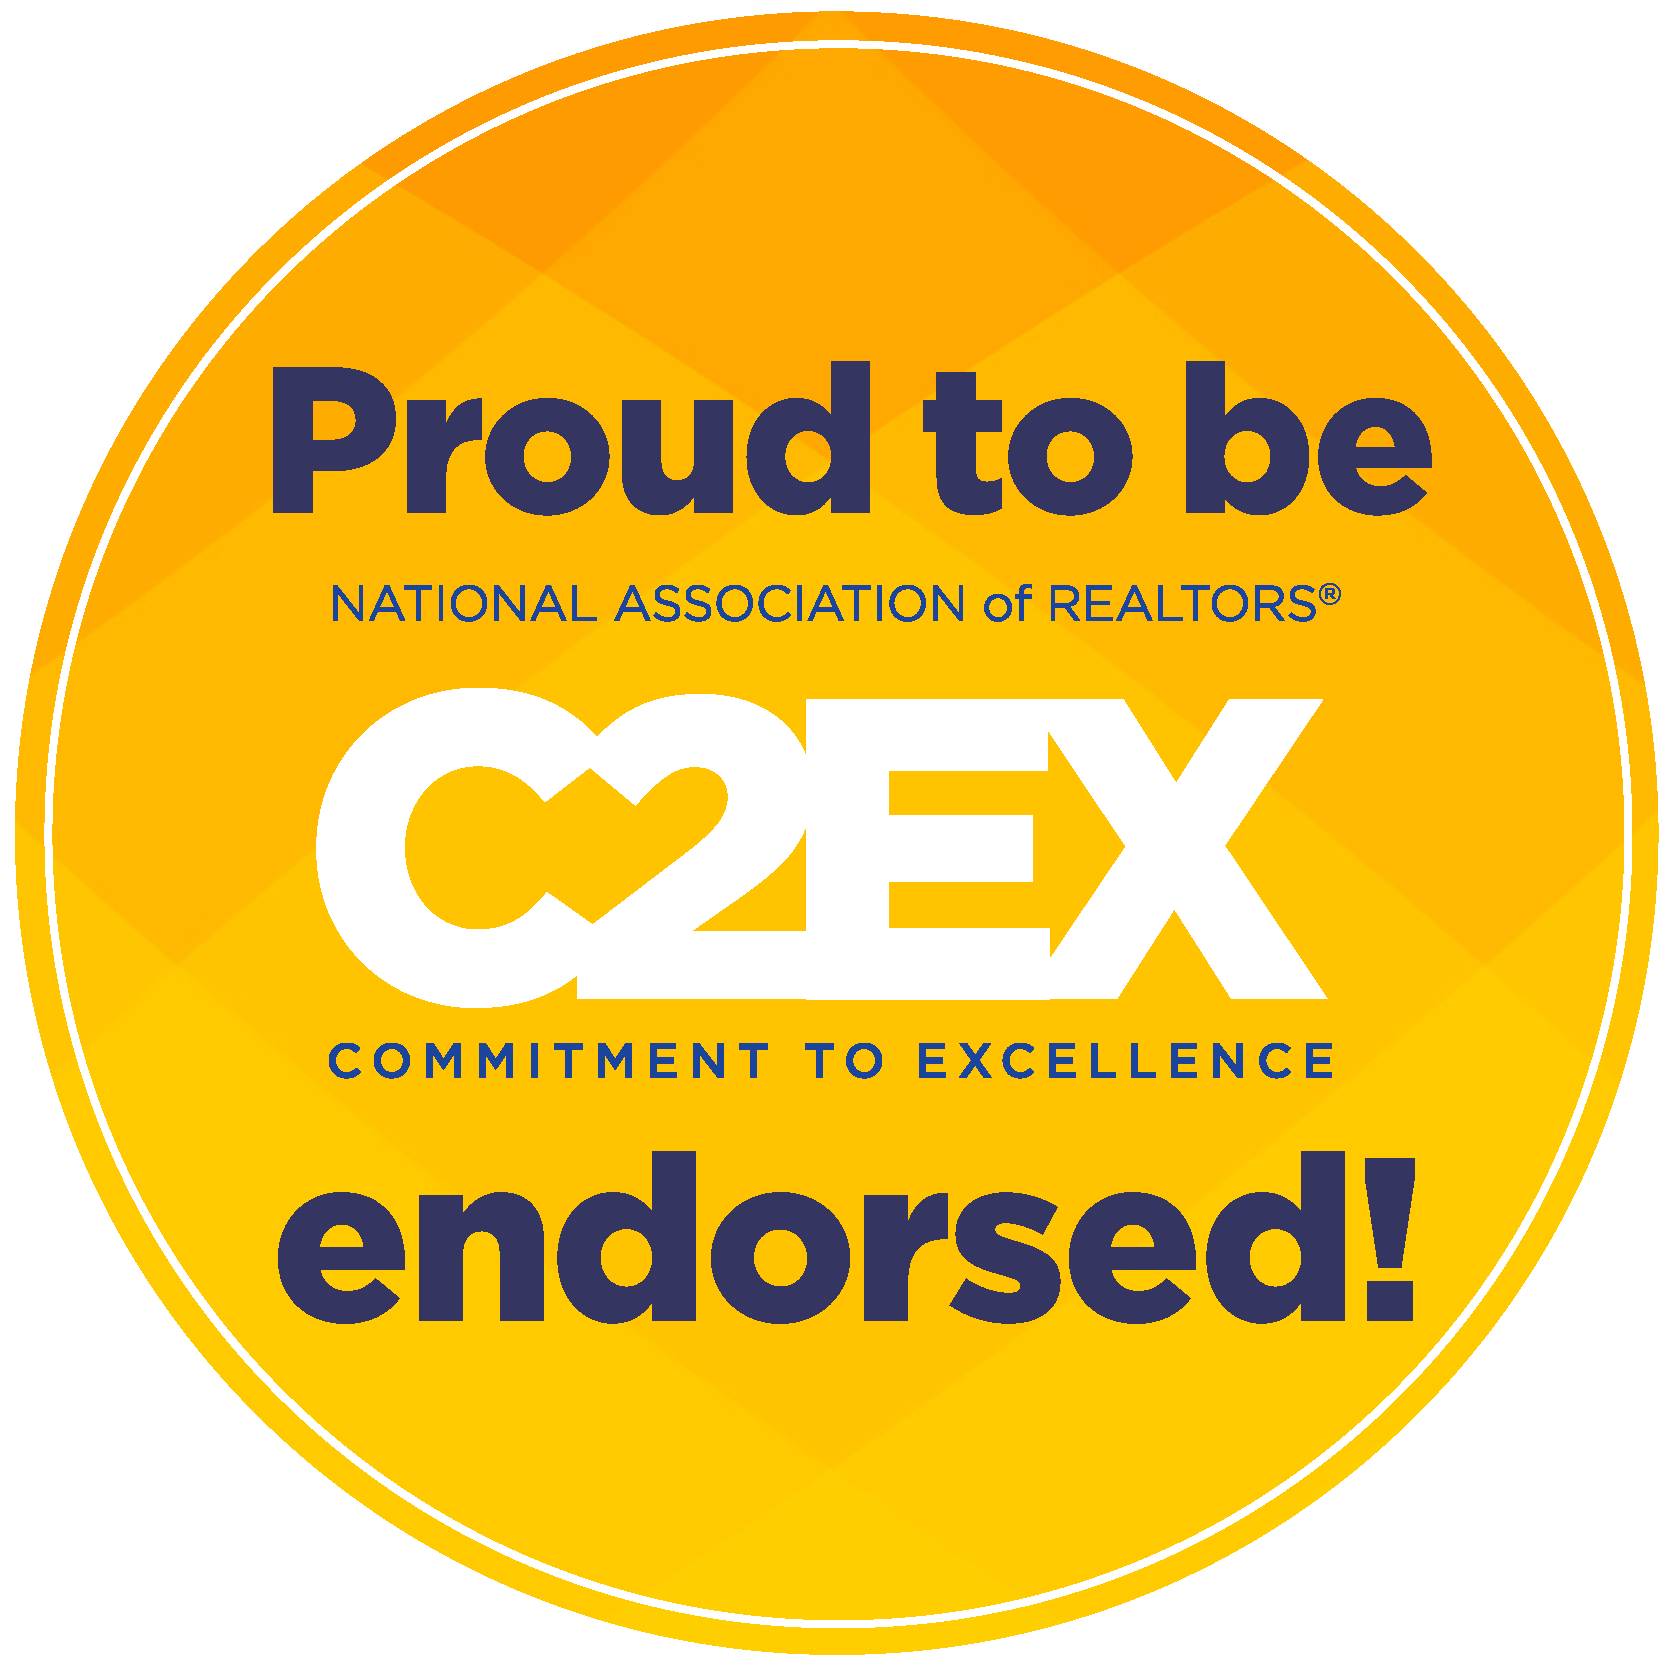 Proud to be C2EX endorsed